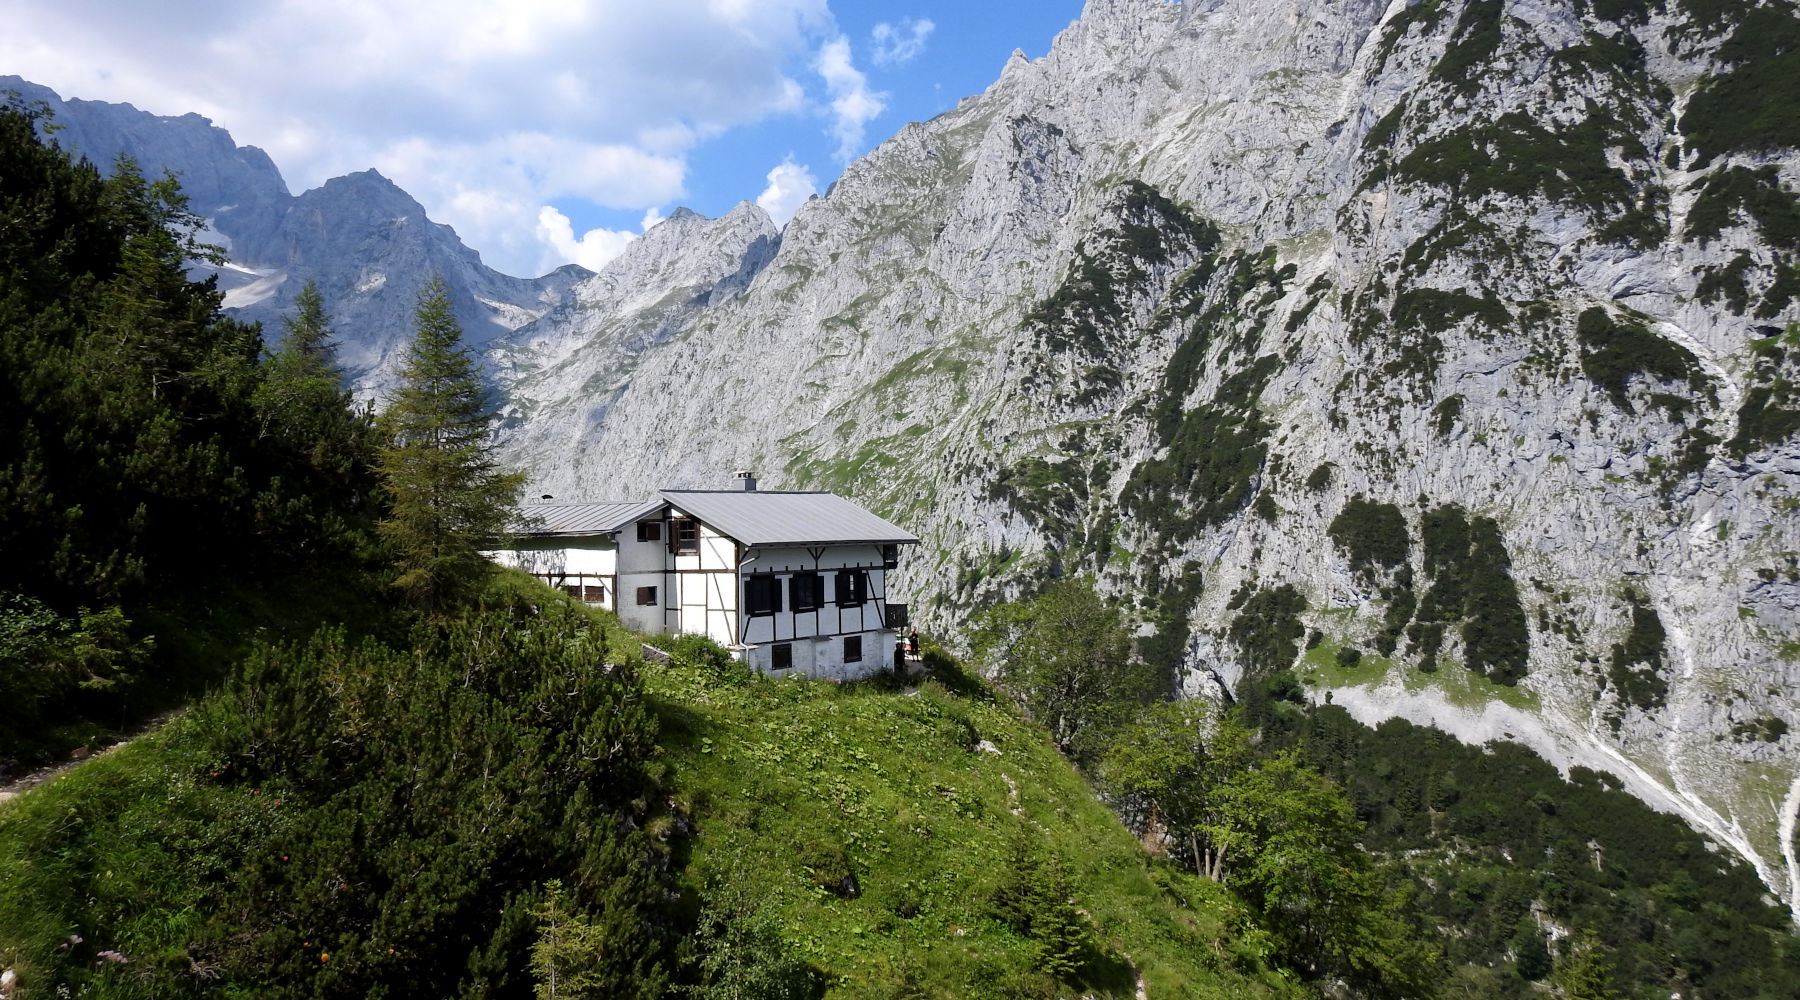 Badersee Blog: Spitzenwanderweg Trail Section 8 - From Kreuzeck Through Höllentalklamm Gorge To Grainau